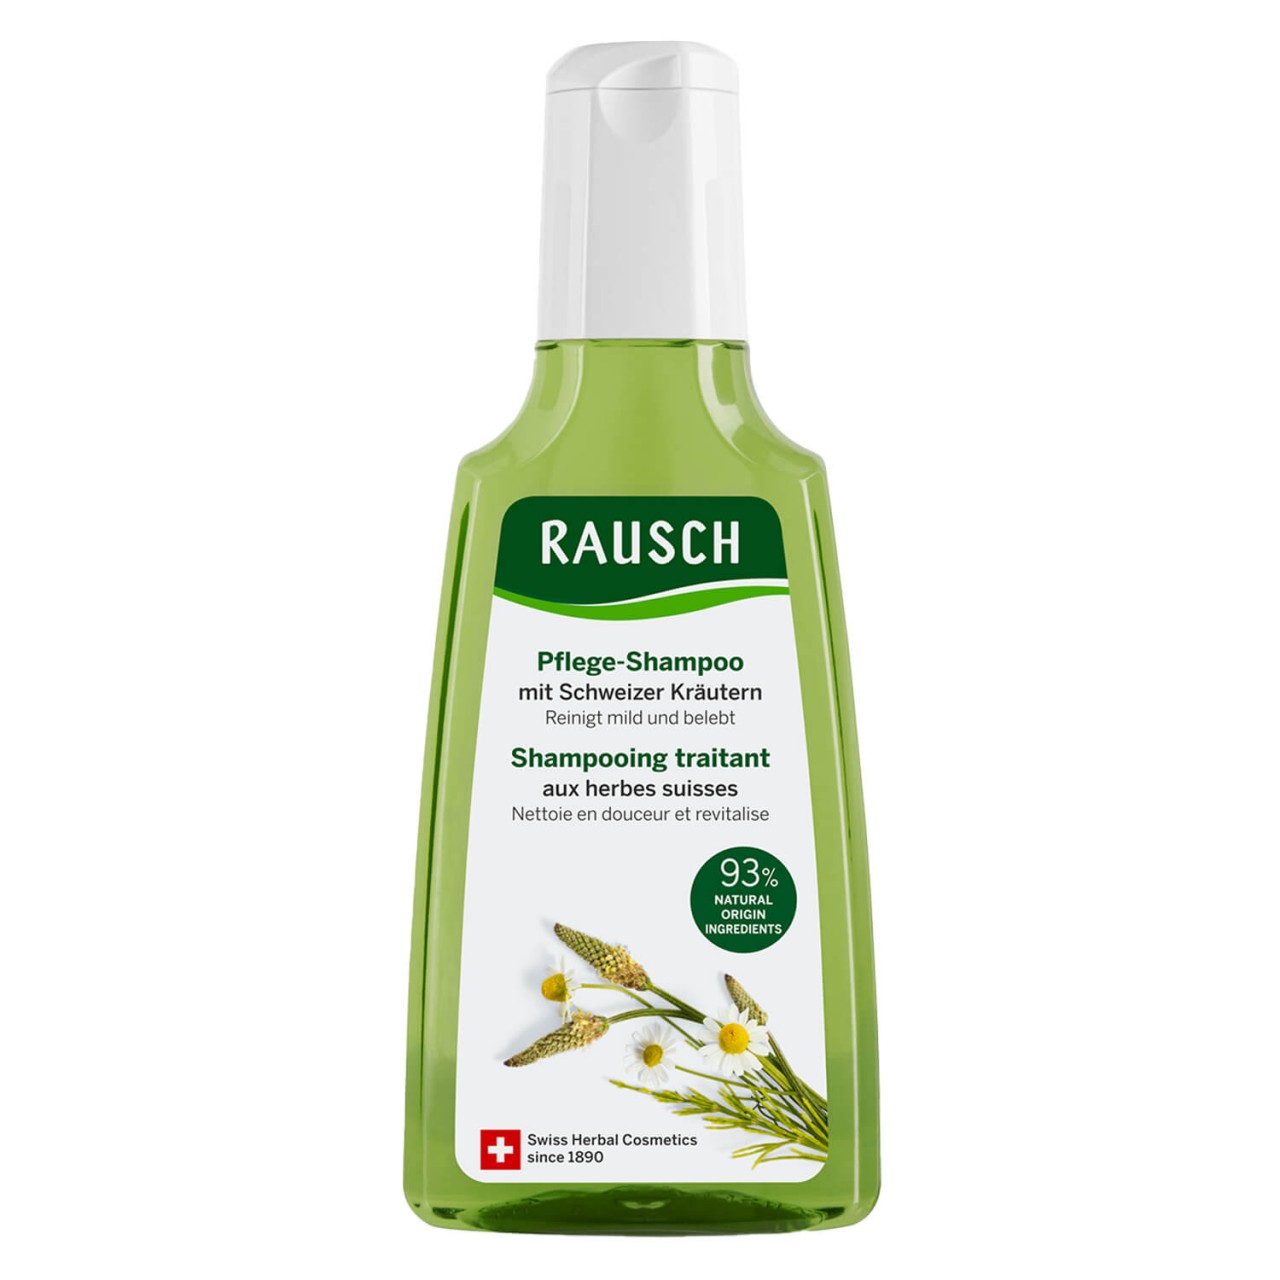 Schweizer Kräuter - Pflege-Shampoo von RAUSCH